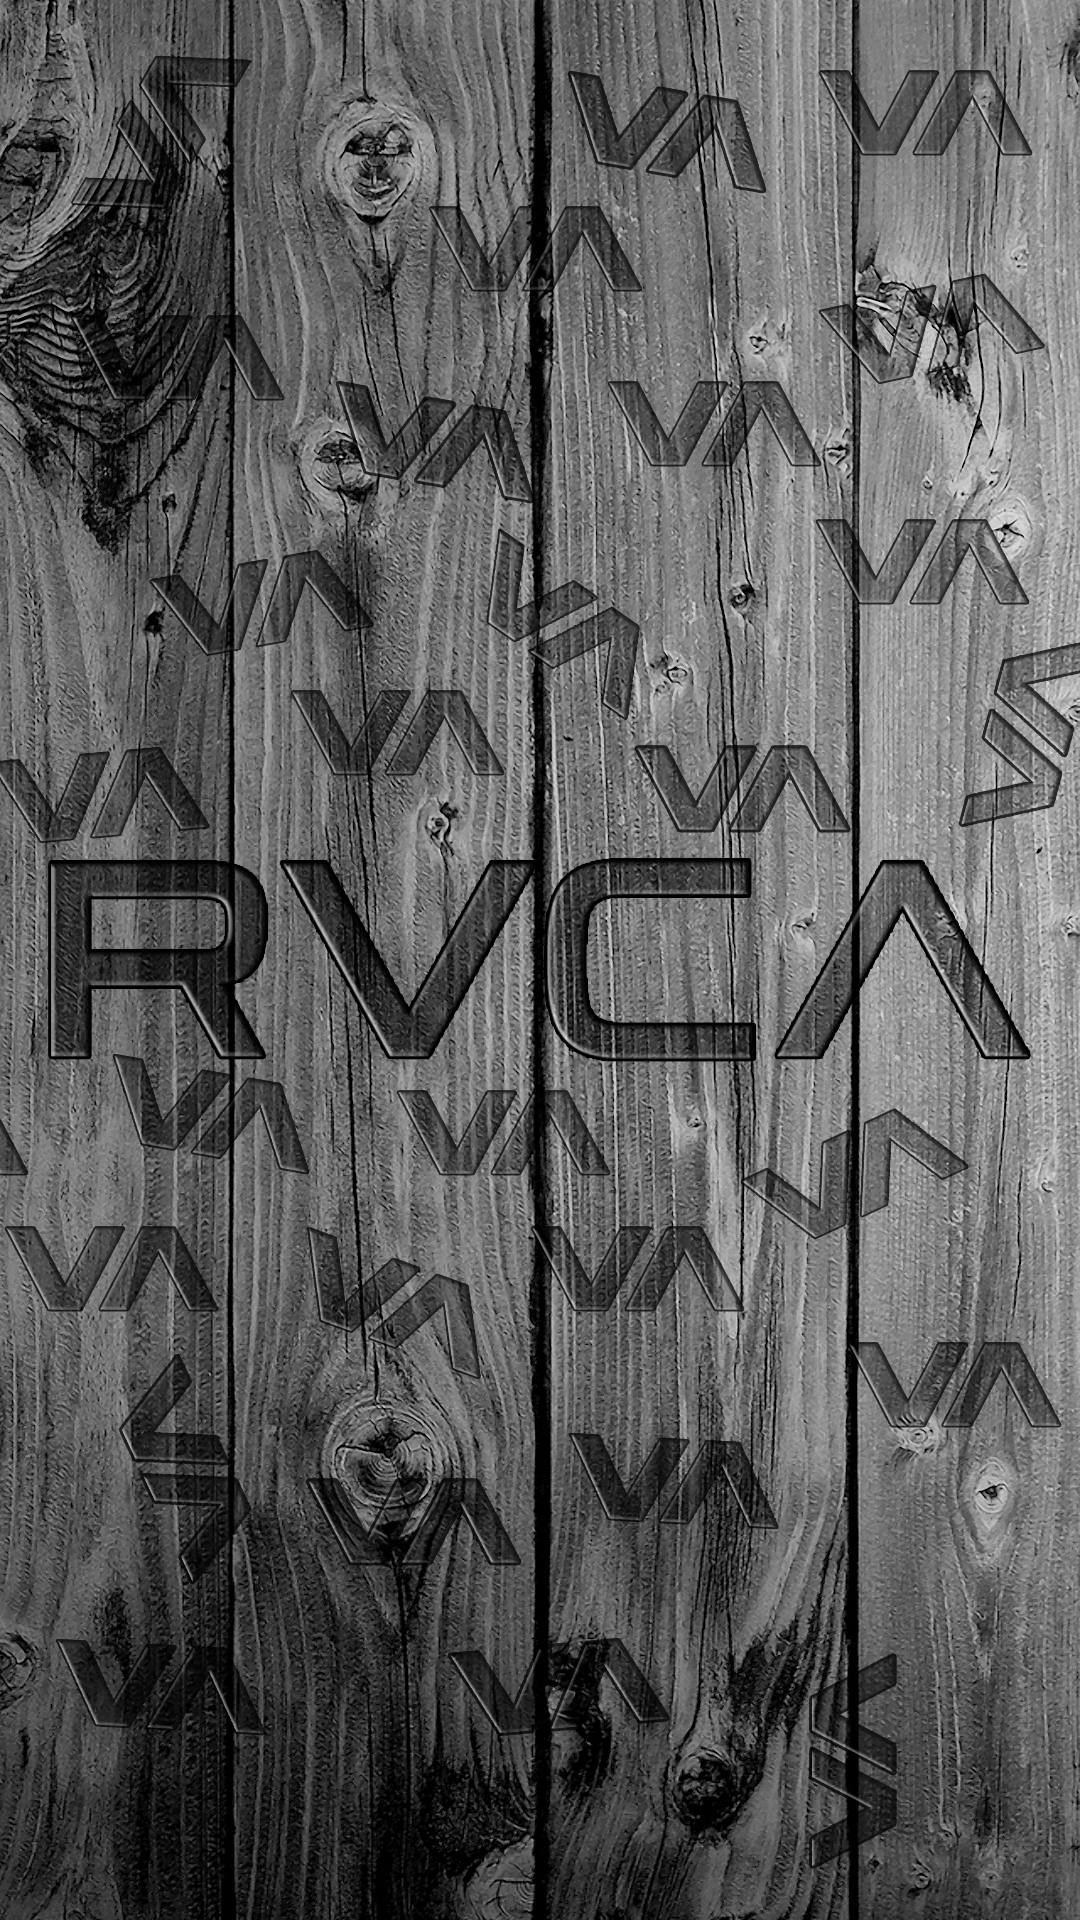 RVCA Wallpapers - Wallpaper Cave